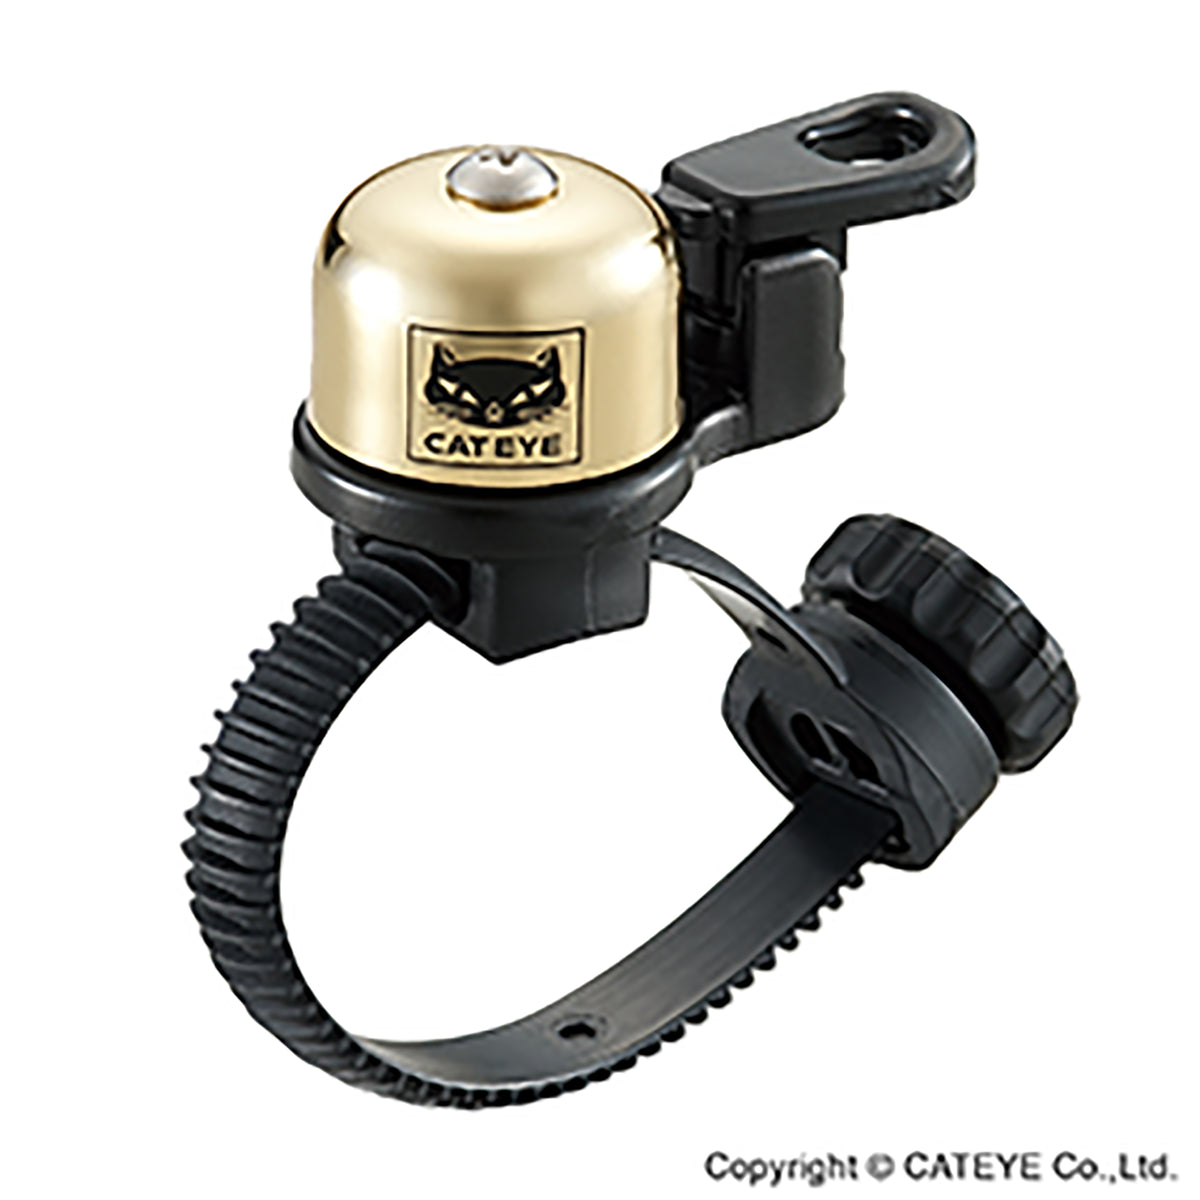 Cateye Oh-2400 Flextight Brass Bell